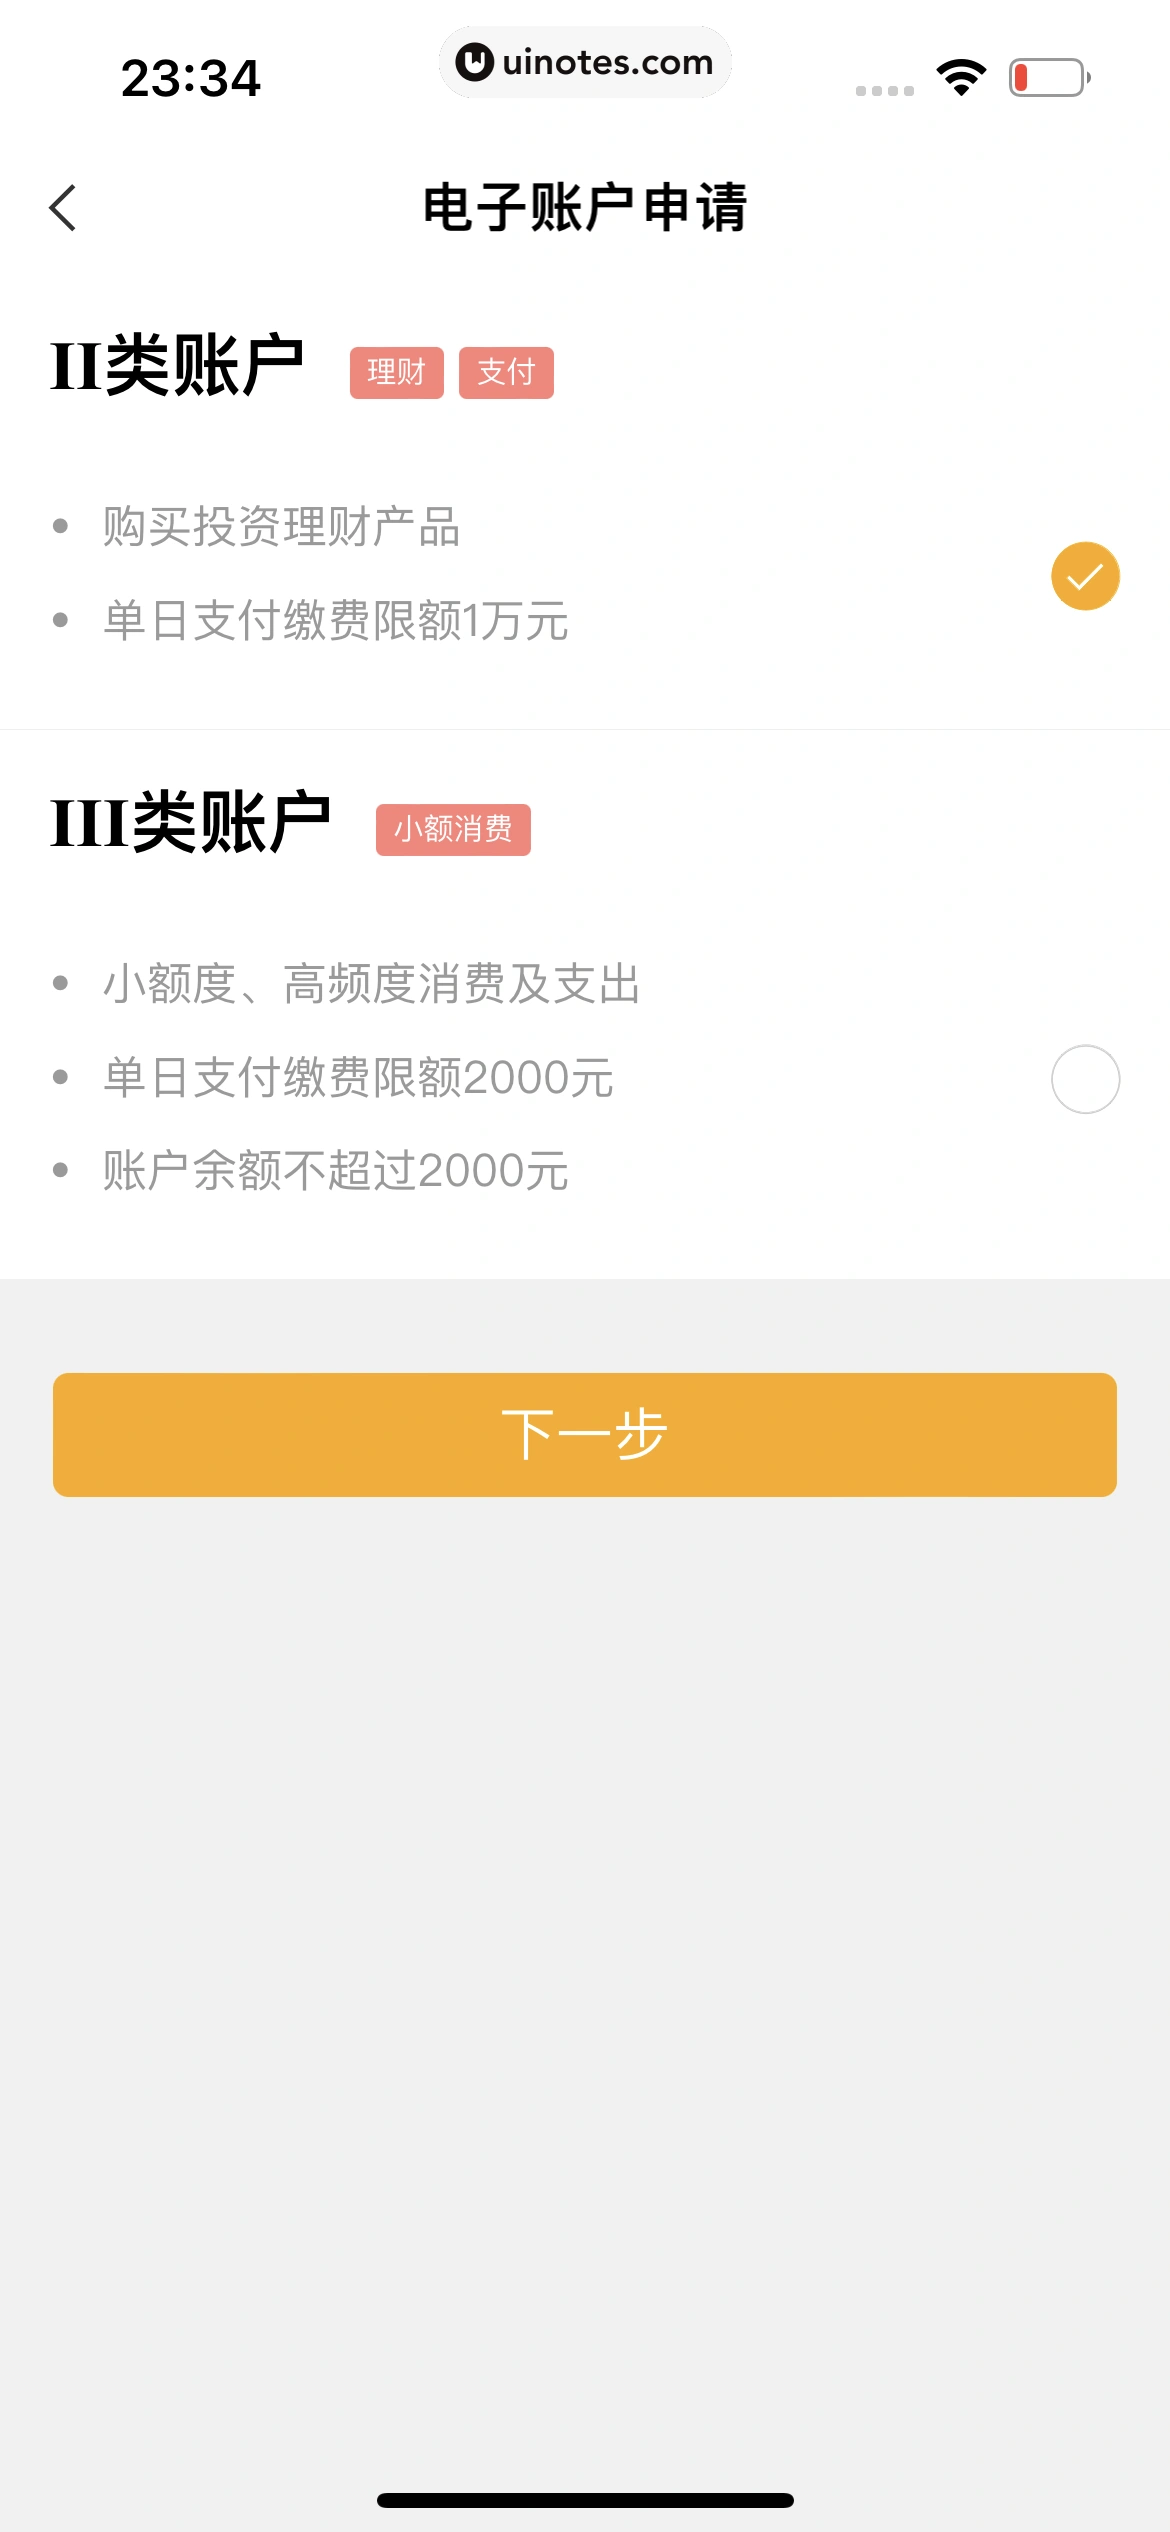 中国农业银行 App 截图 081 - UI Notes